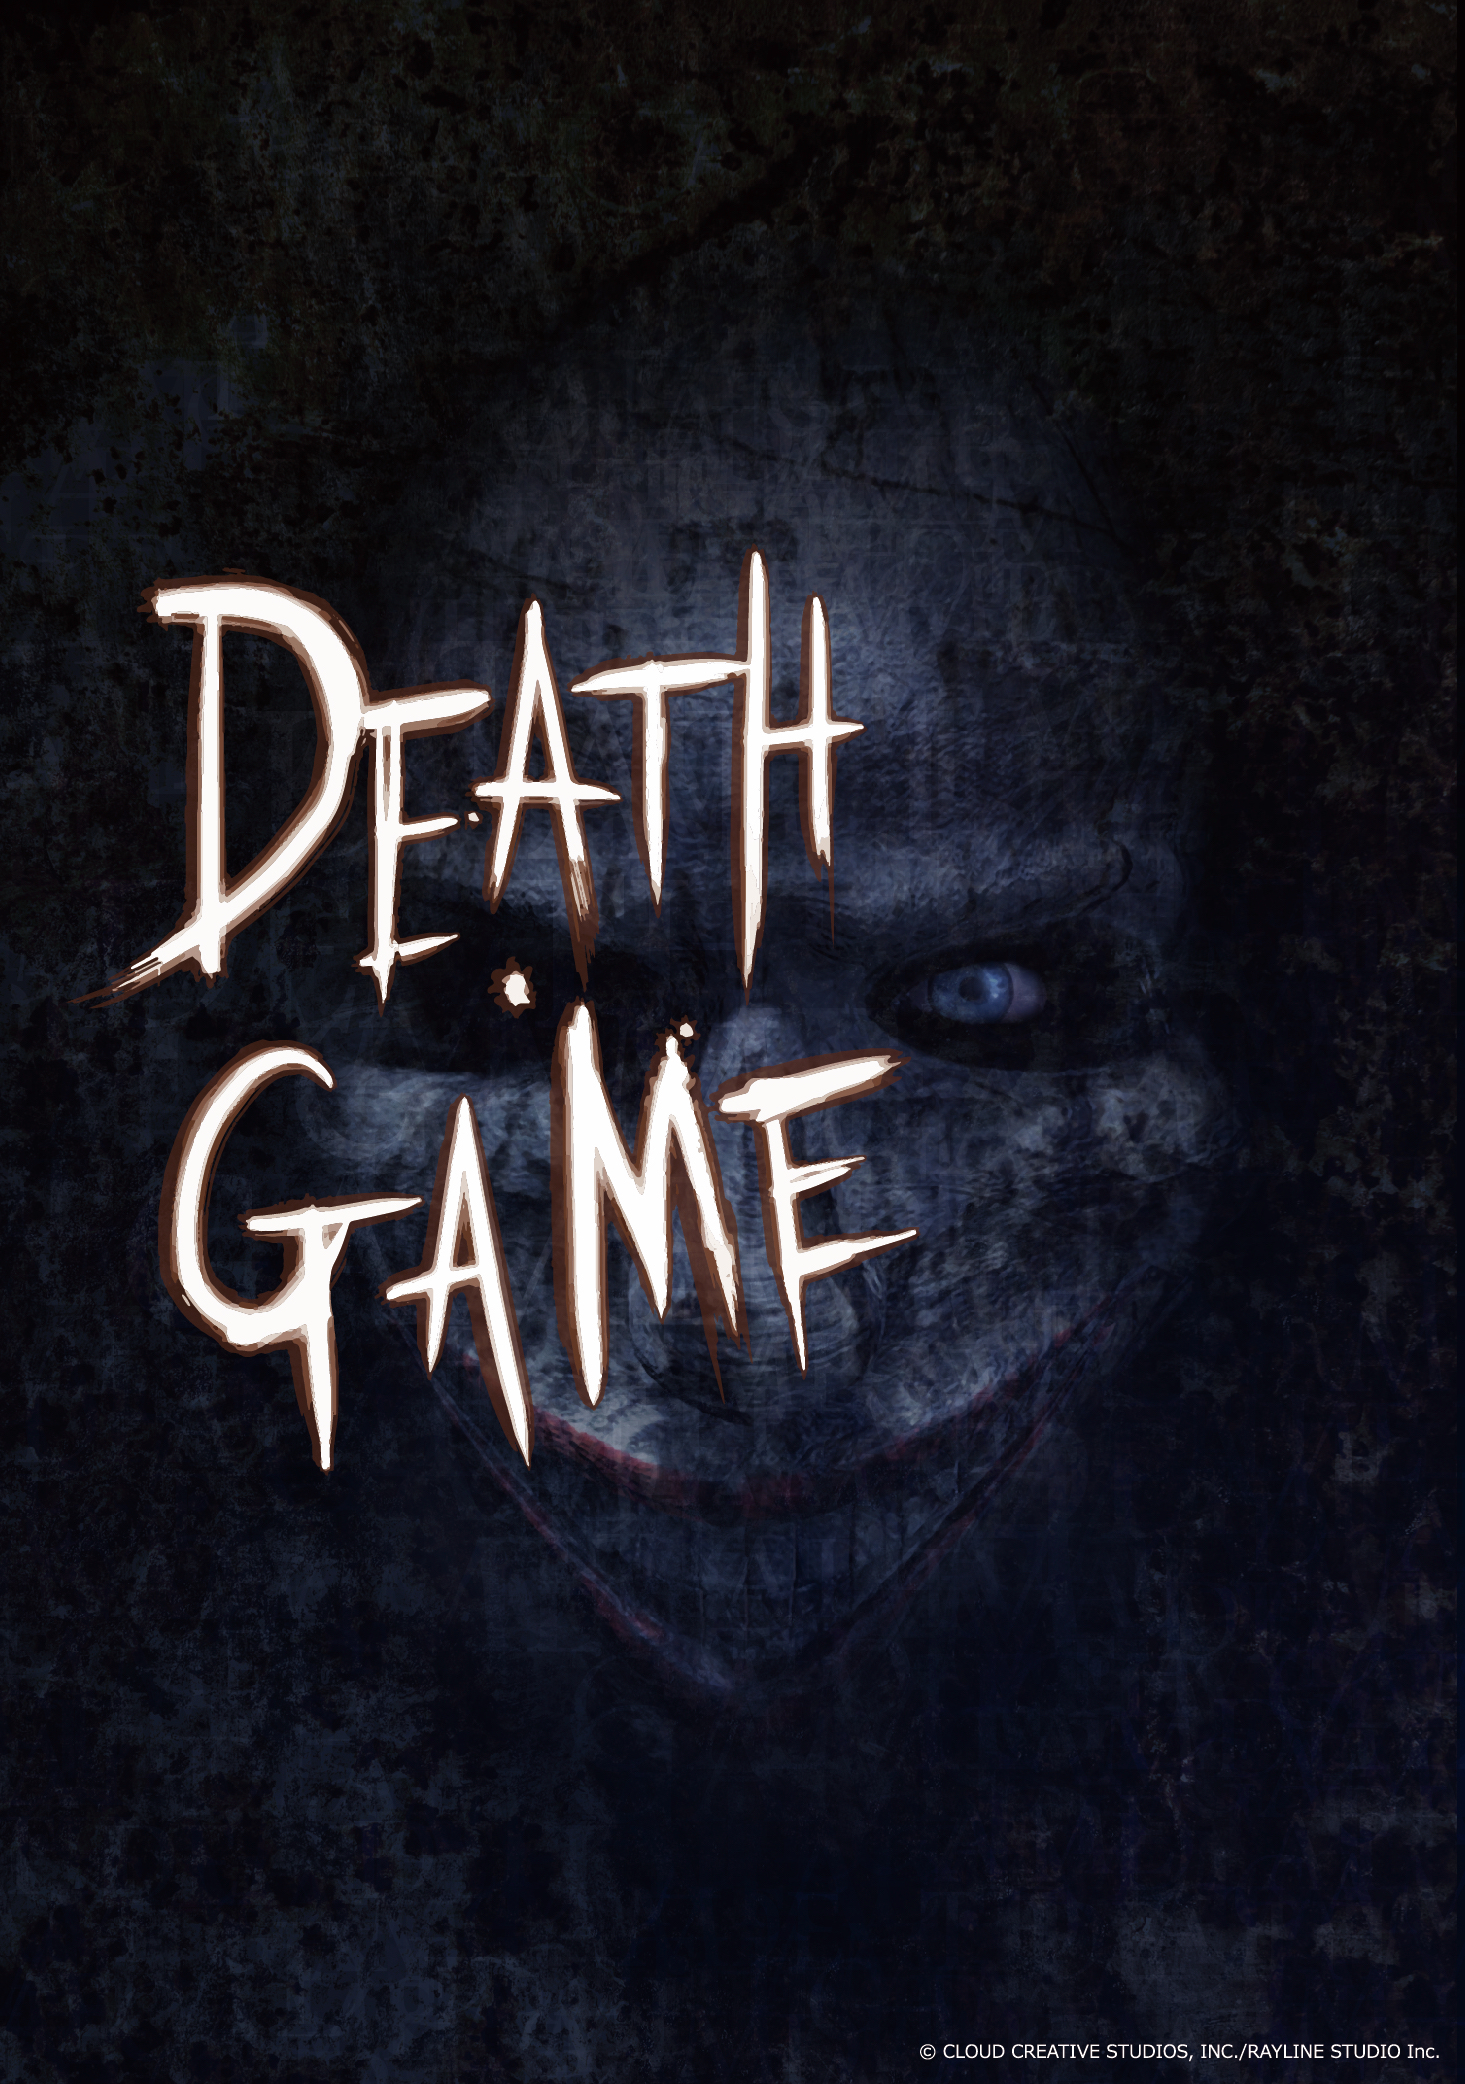 新作vr脱出ゲーム Death Game を開発中 株式会社クラウドクリエイティブスタジオのプレスリリース